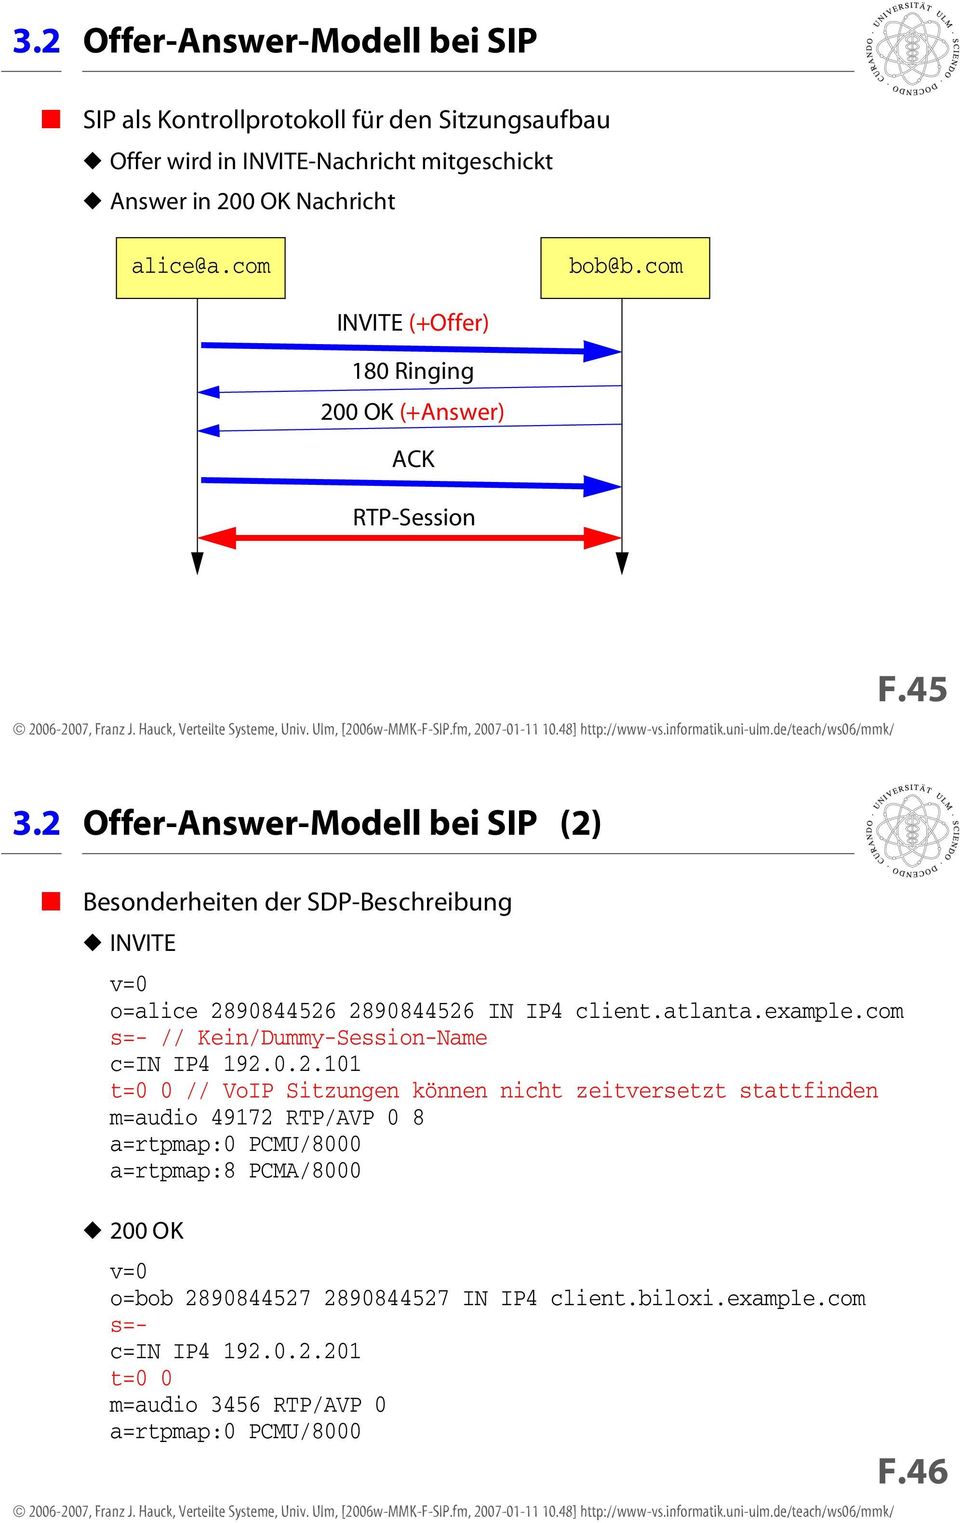 2 Offer-Answer-Modell bei SIP (2) Besonderheiten der SDP-Beschreibung INVITE v=0 o=alice 2890844526 2890844526 IN IP4 client.atlanta.example.